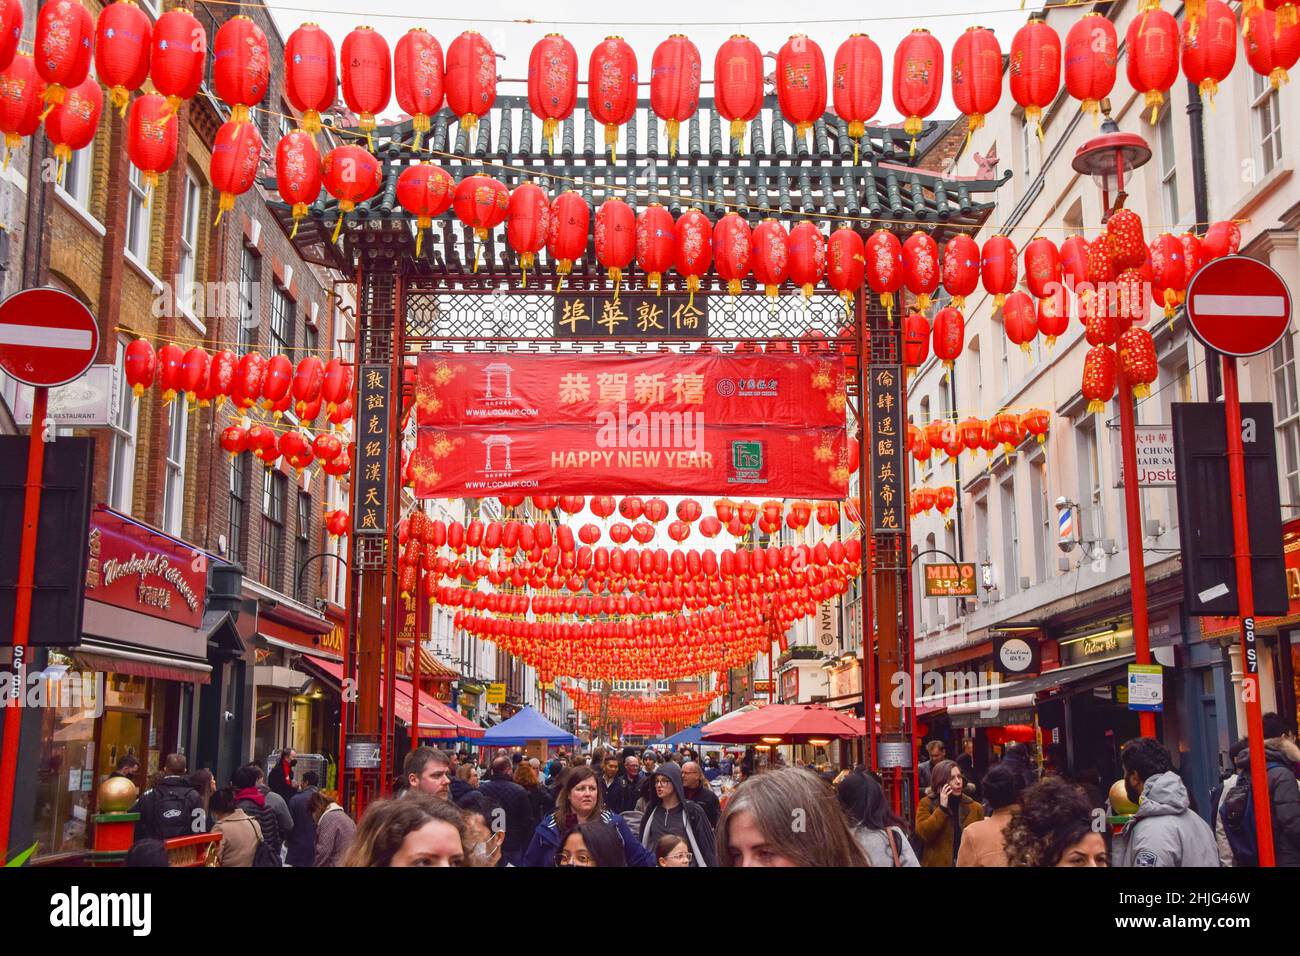 Londres, Royaume-Uni.29th janvier 2022.De nouvelles lanternes rouges et des panneaux « Happy New Year » décorent le quartier chinois de Londres avant le nouvel an lunaire.Cette année sera l'année du tigre.Crédit : SOPA Images Limited/Alamy Live News Banque D'Images